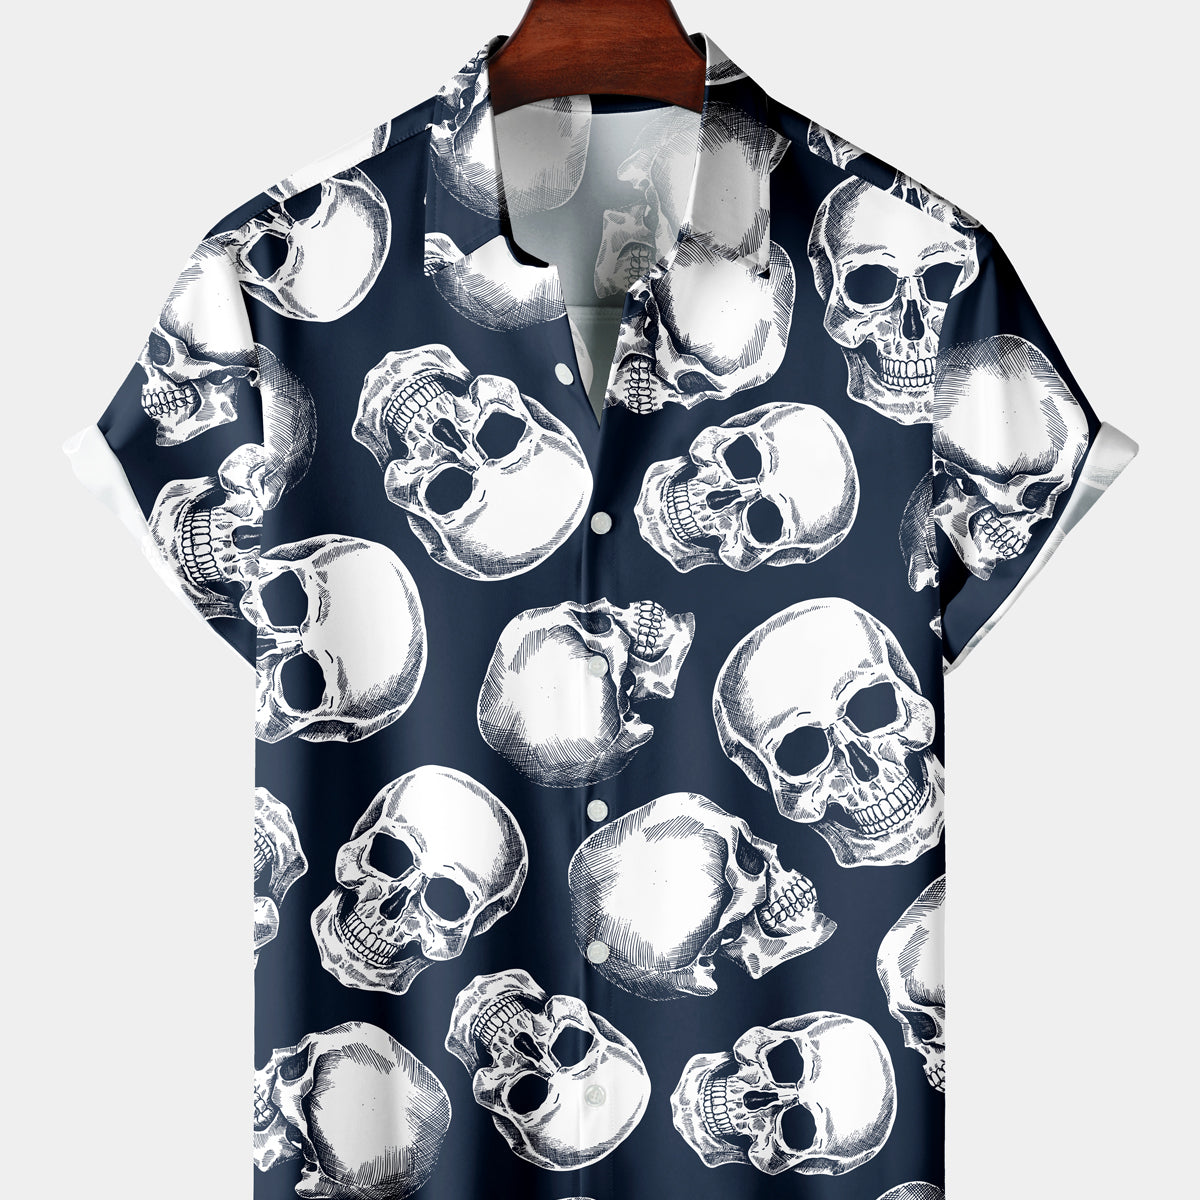 Men's Casual Navy Blue Skull Short Sleeve Shirt